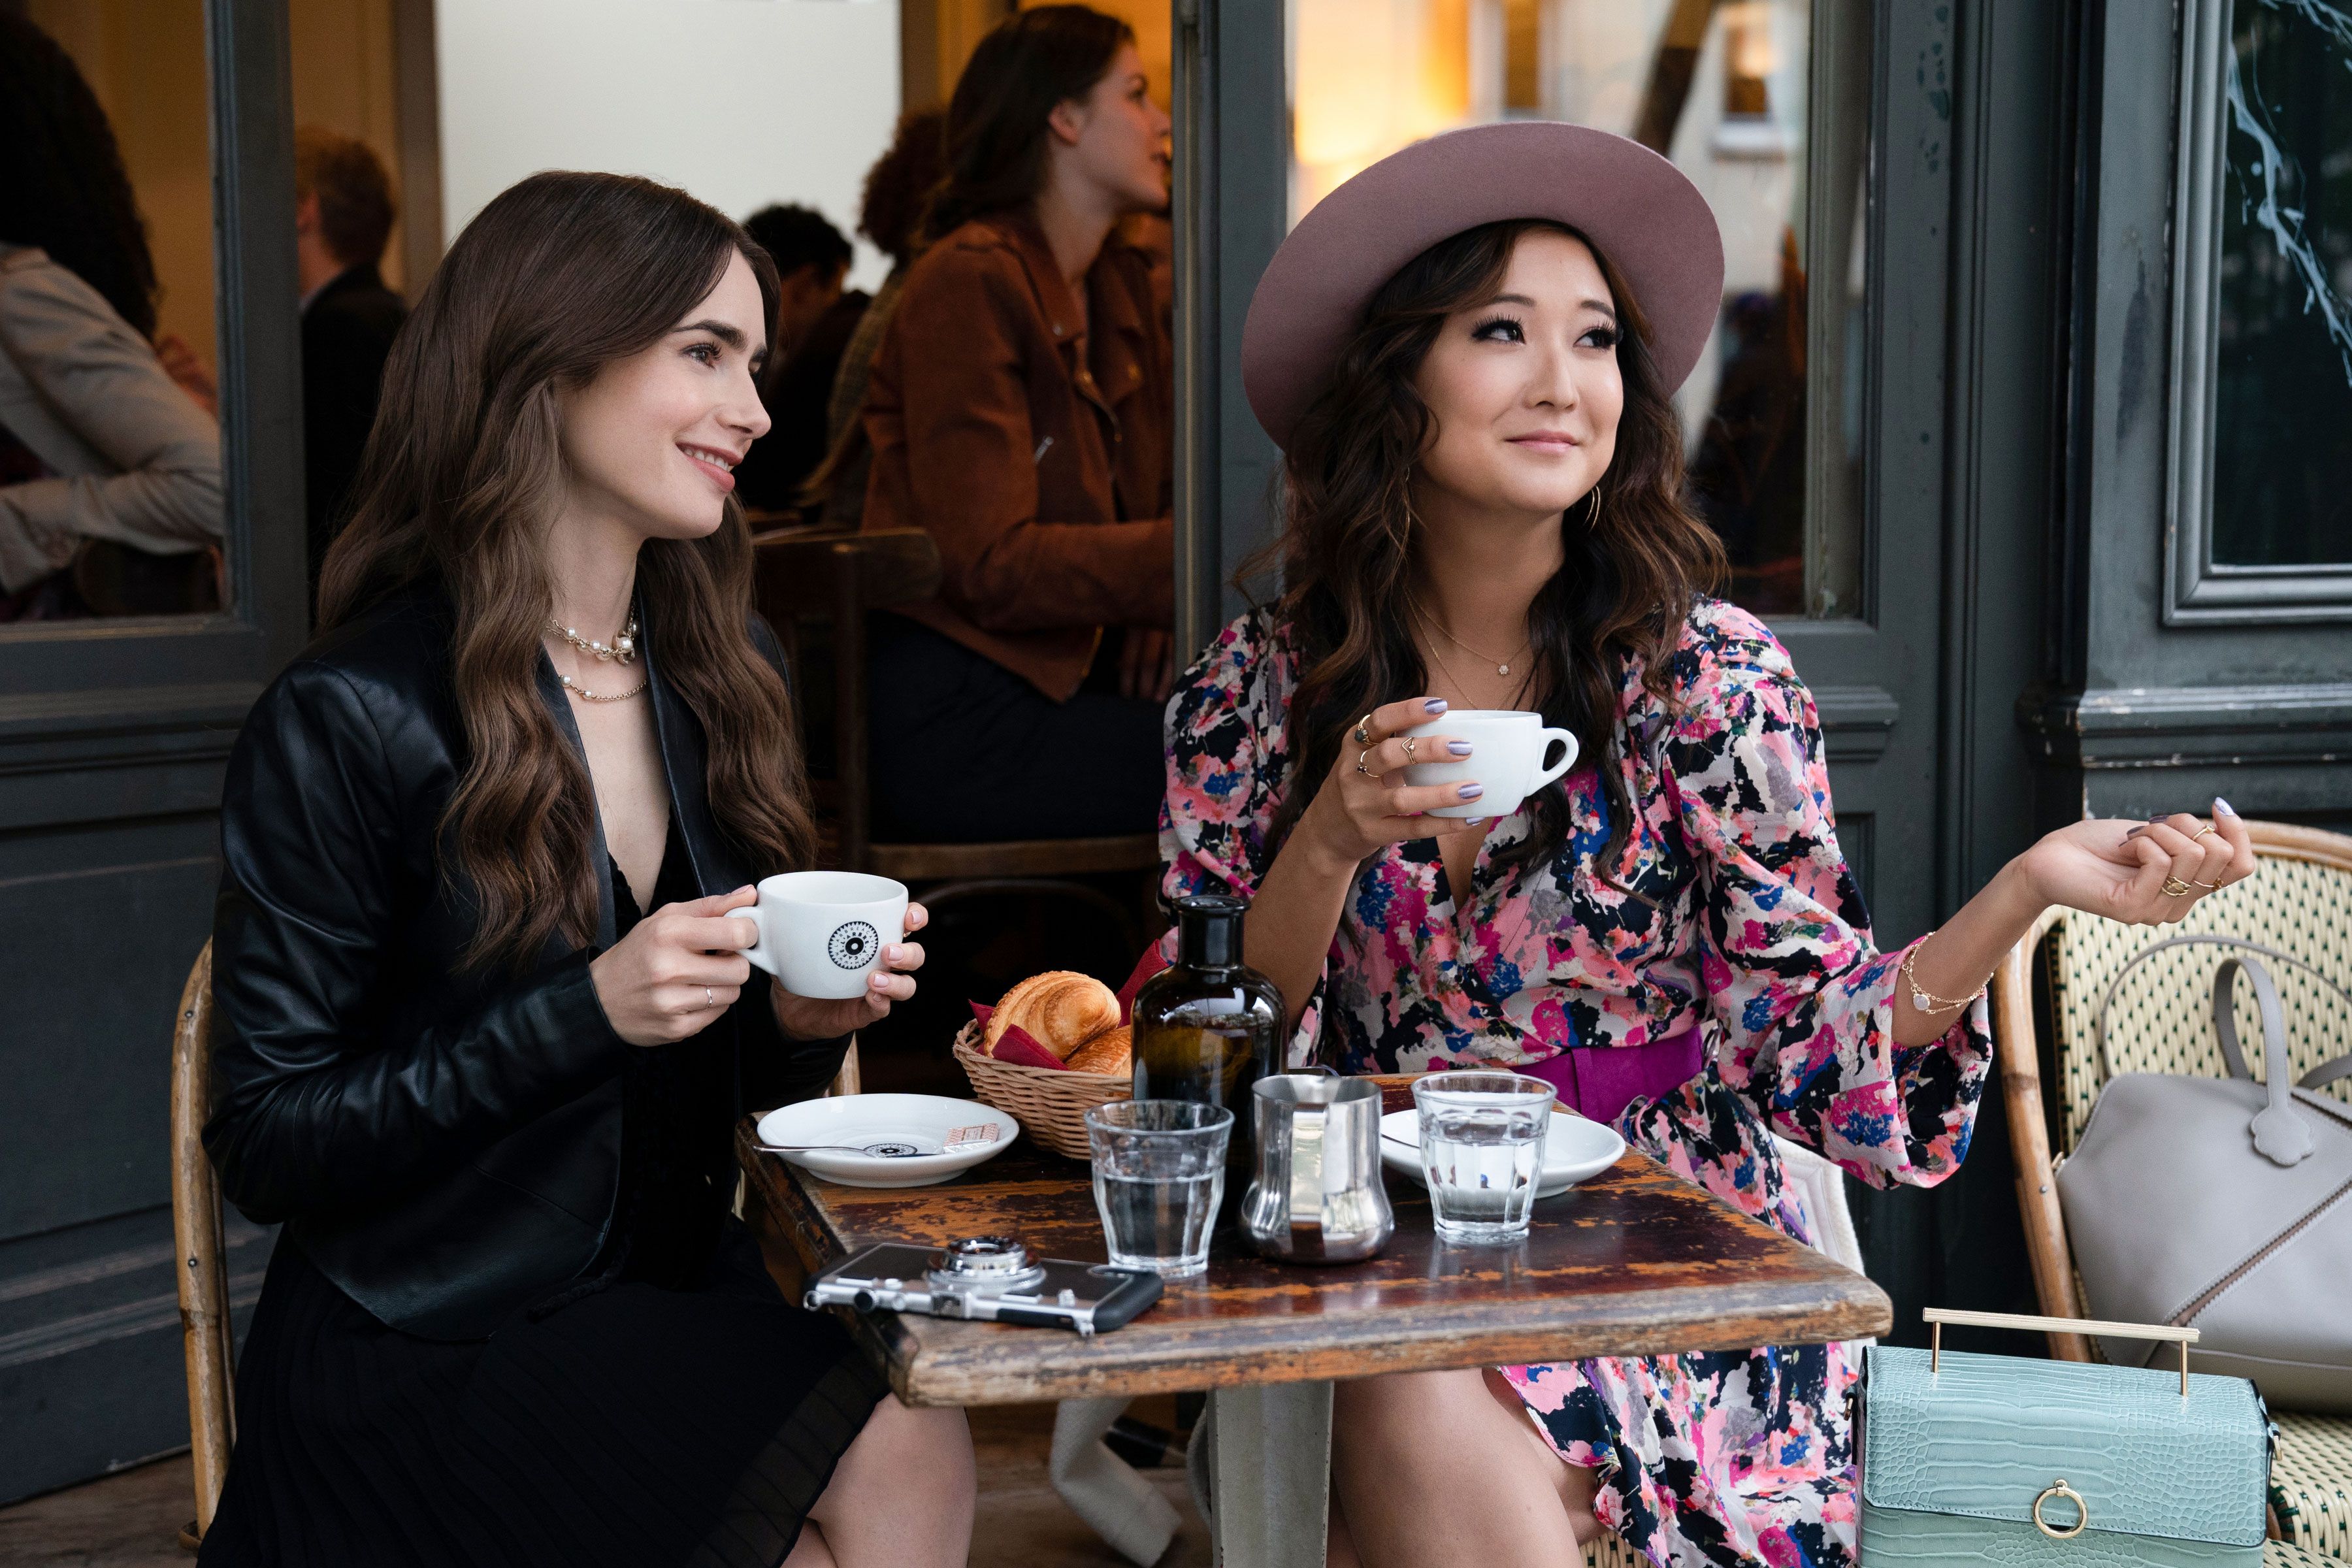 Emily in Paris' Season 2: News, Premiere Date, Cast, Spoilers, Episodes